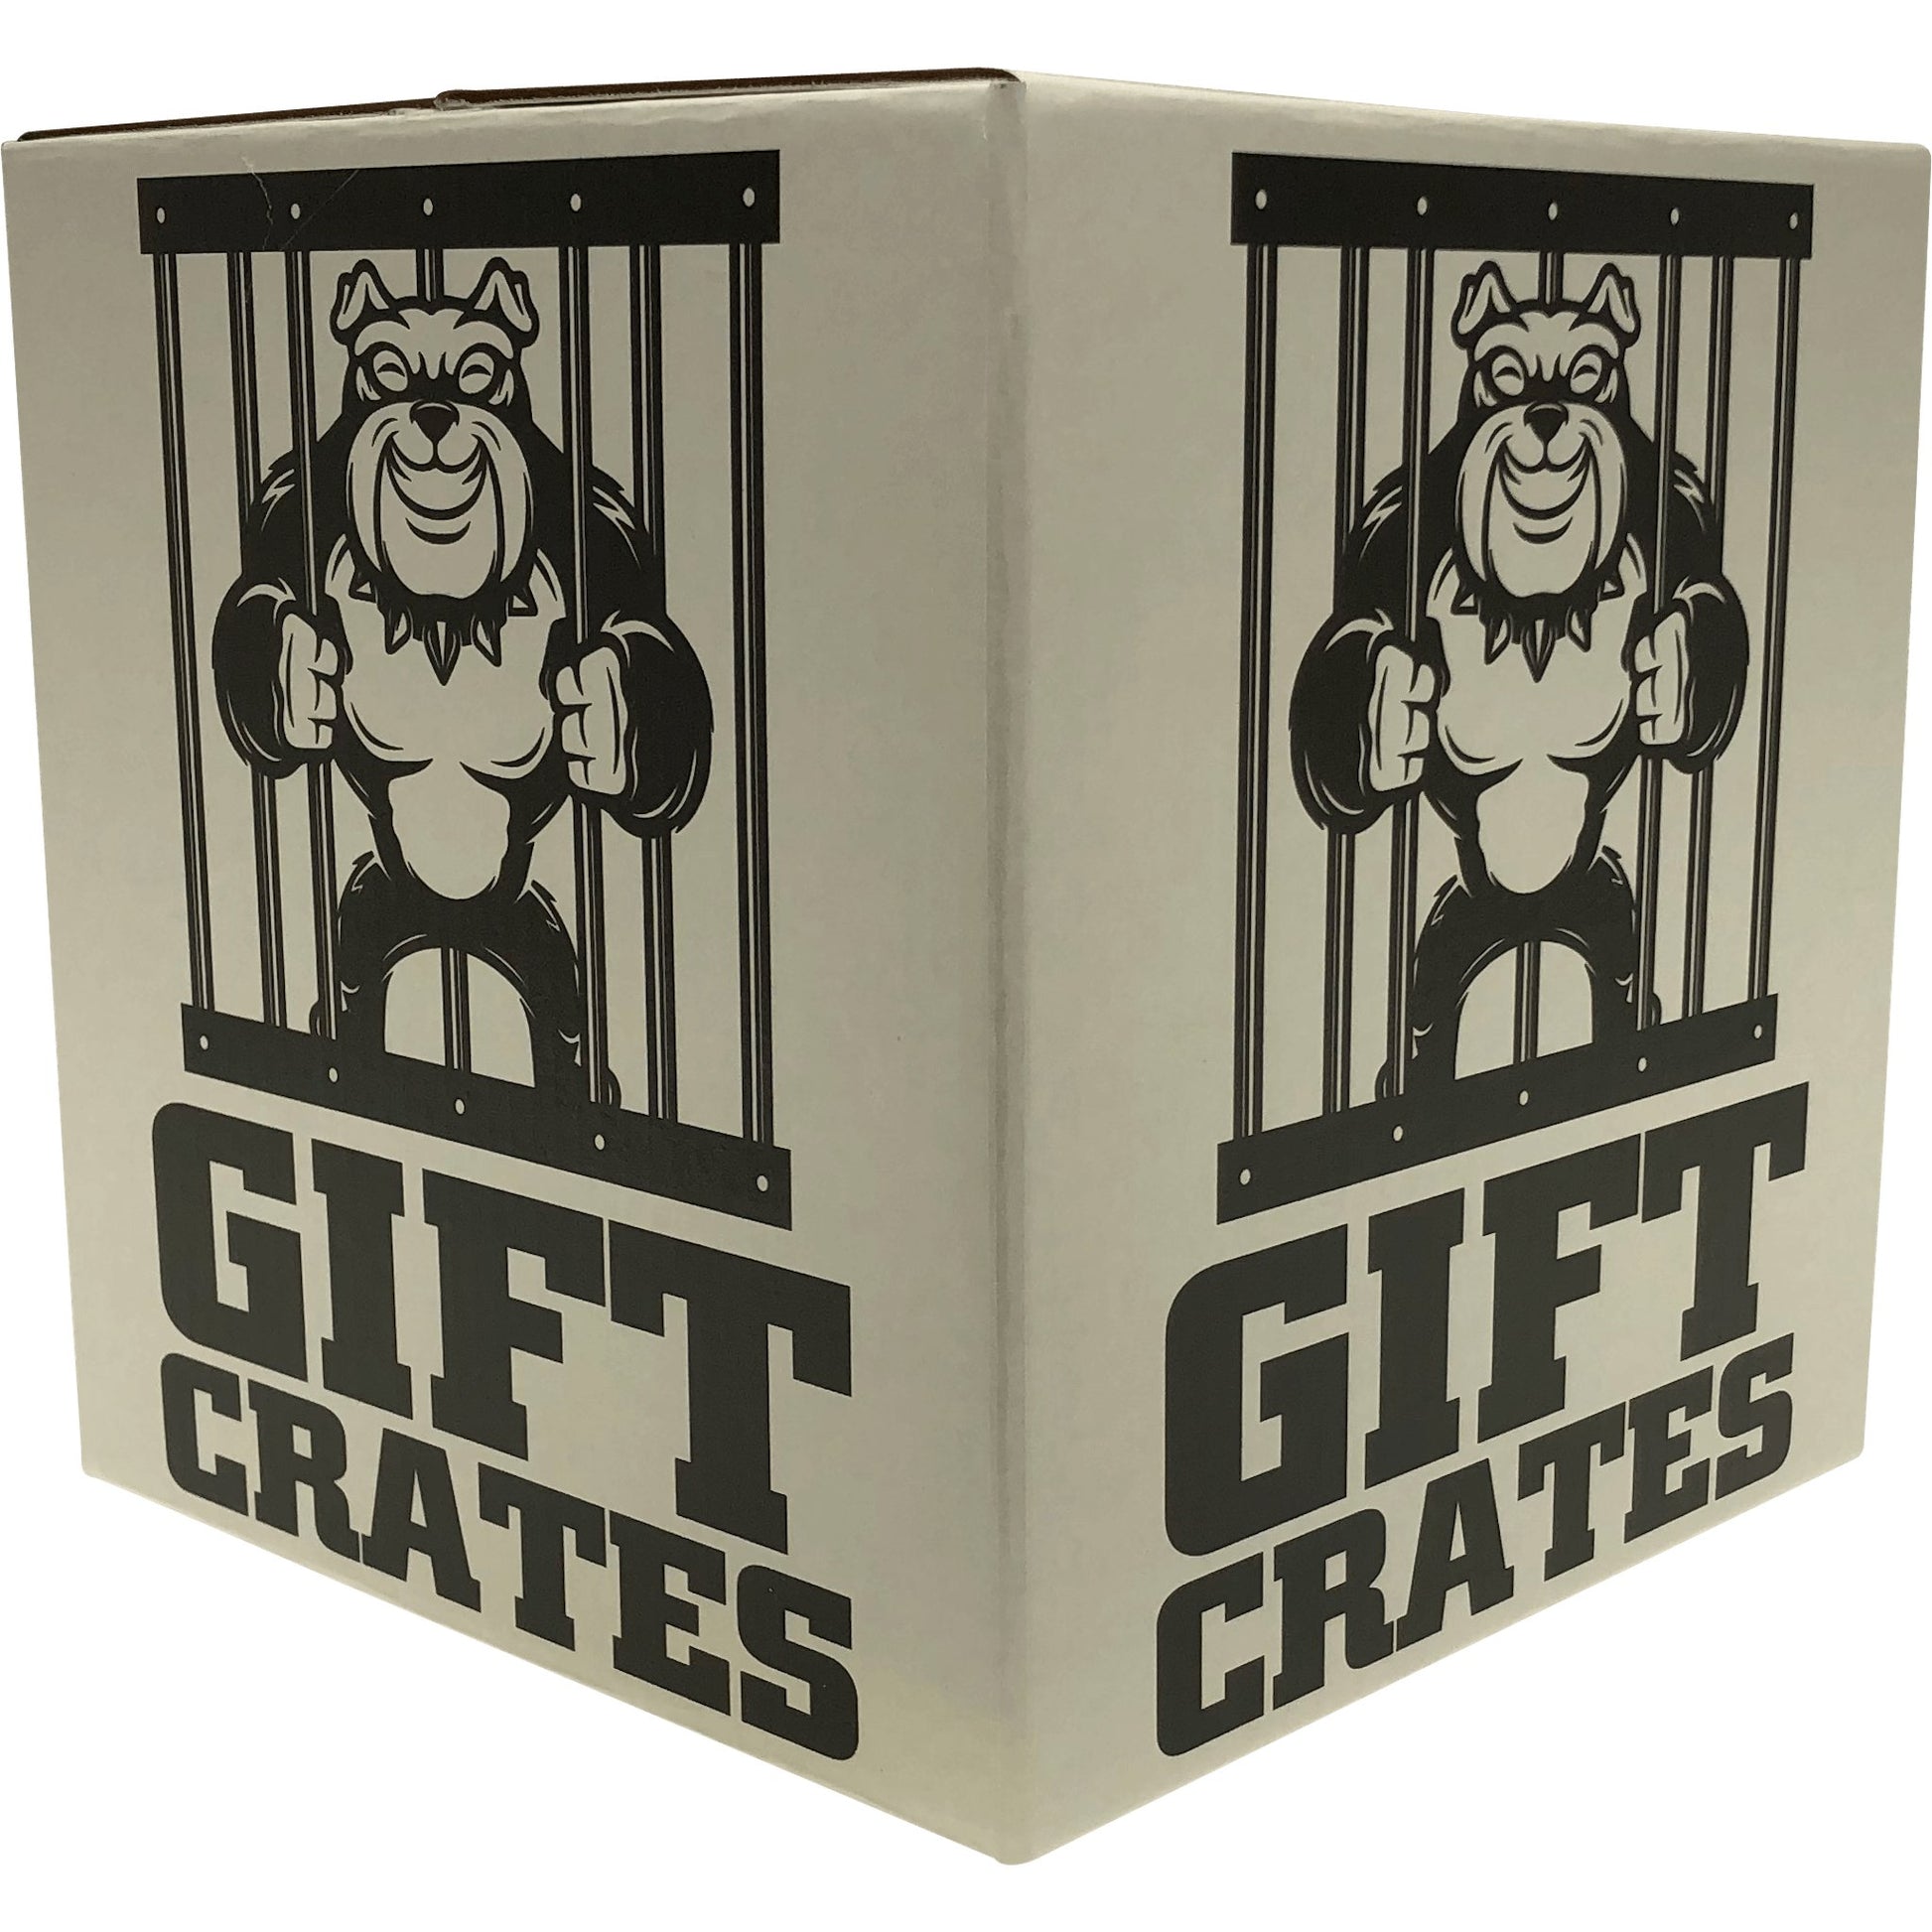 Margarita Crate - Gift Crates